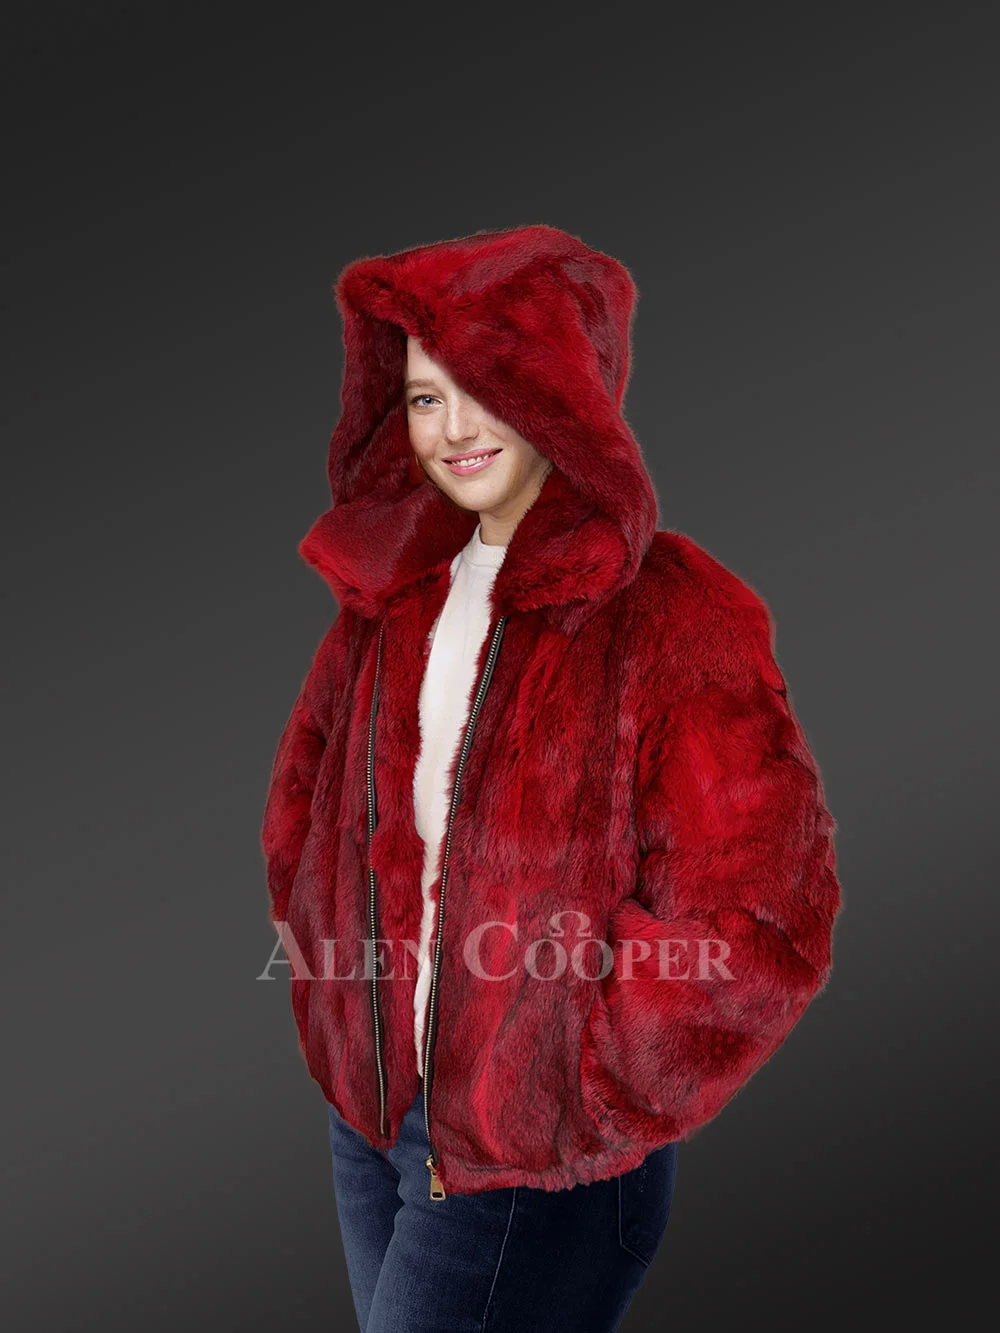 Alen Cooper Rabbit Fur Bomber for Men with Hood